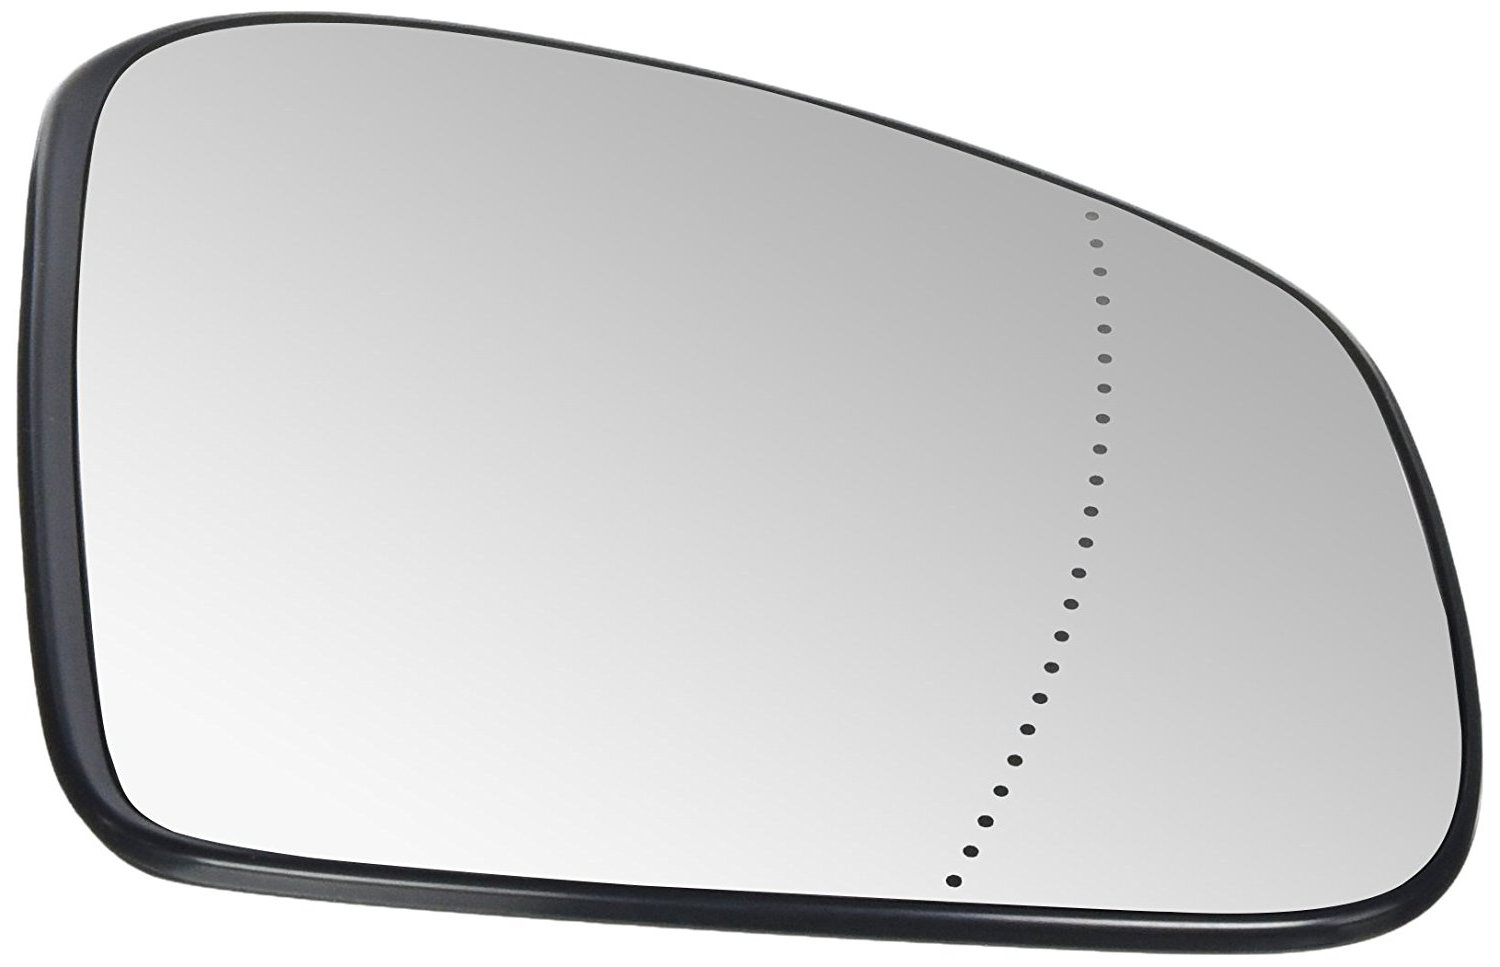 Geam oglinda Renault Twingo, 09.2014-, Smart Forfour (W453), 11.2014- , partea Dreapta, culoare sticla crom , sticla convexa, cu incalzire, 963740808R